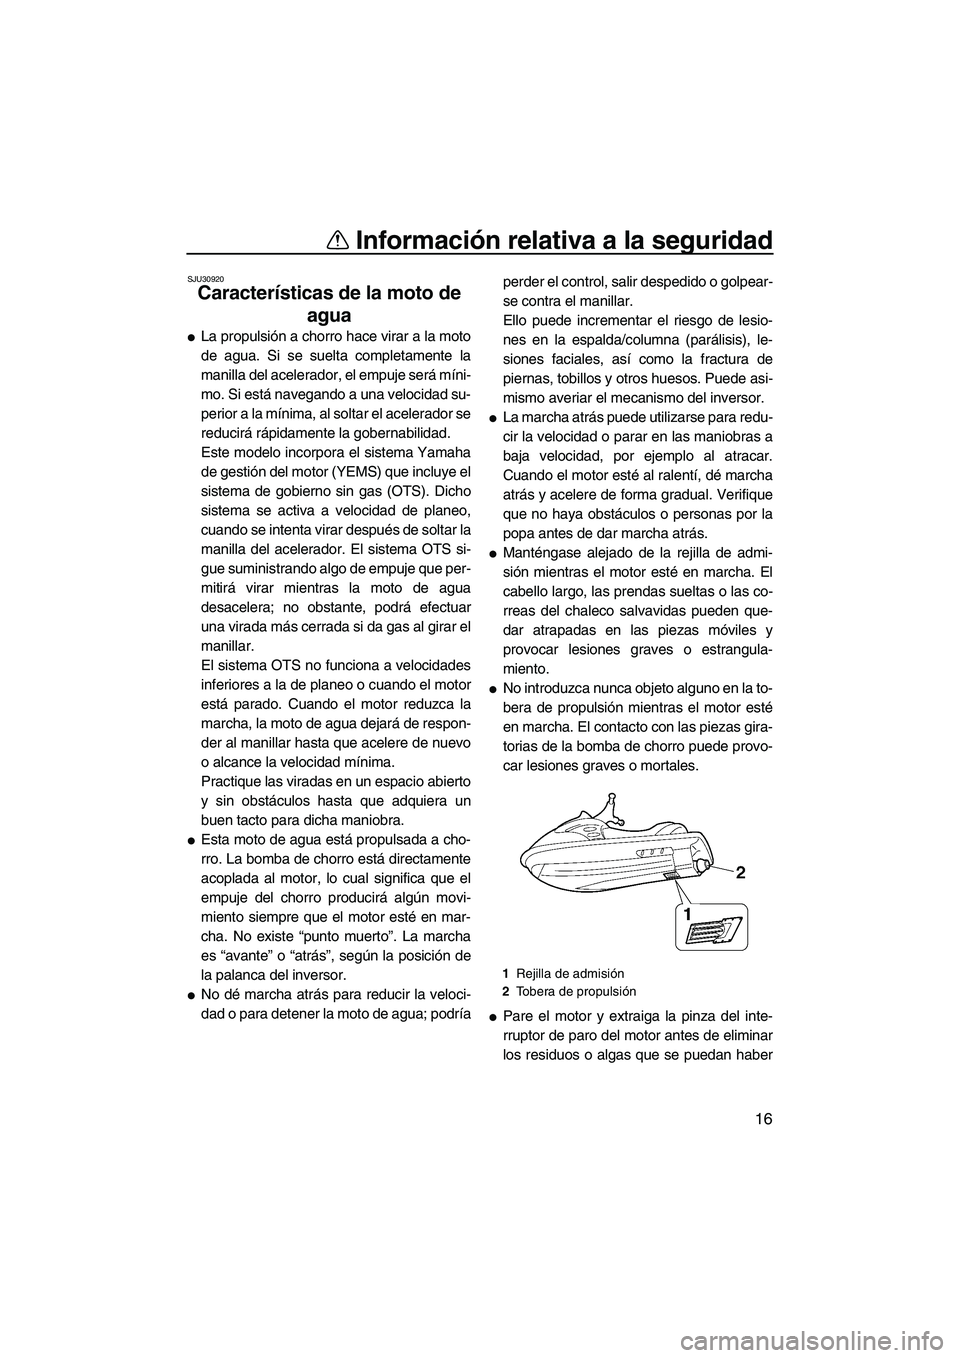 YAMAHA FX HO 2007  Manuale de Empleo (in Spanish) Información relativa a la seguridad
16
SJU30920
Características de la moto de 
agua 
La propulsión a chorro hace virar a la moto
de agua. Si se suelta completamente la
manilla del acelerador, el e